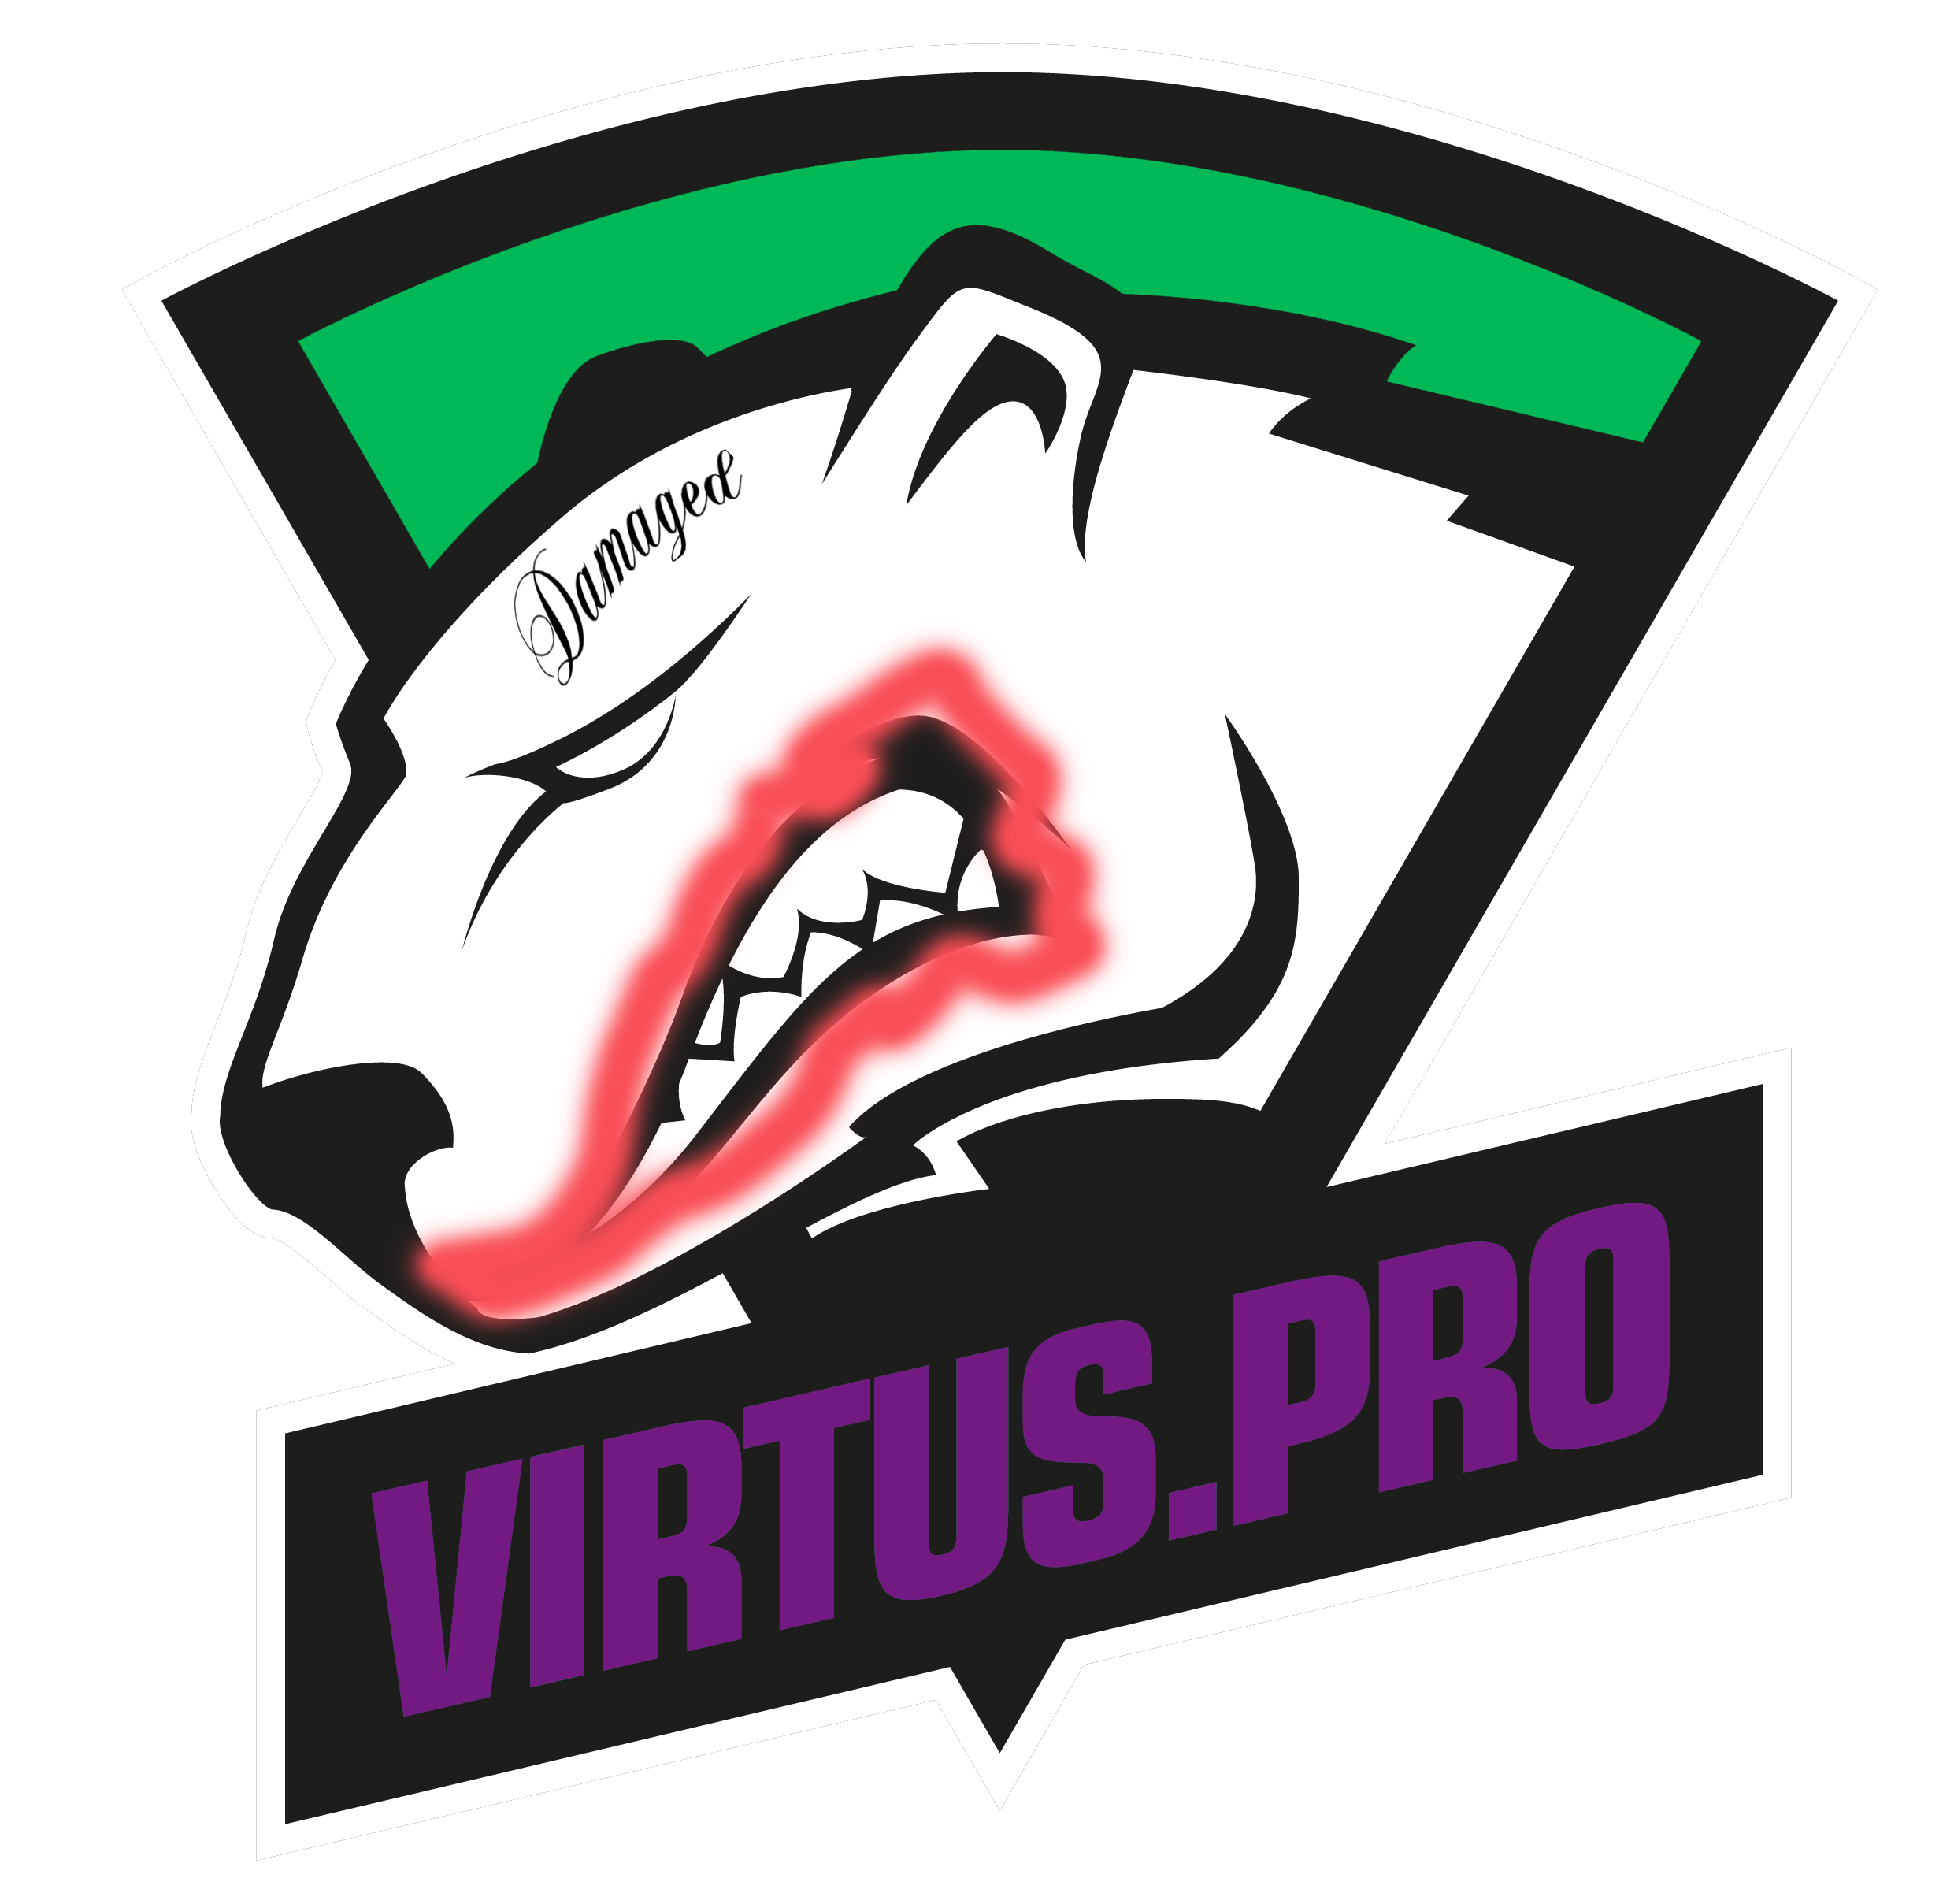 Pro Logo - I thought the new Virtus.Pro logo reminded me of something